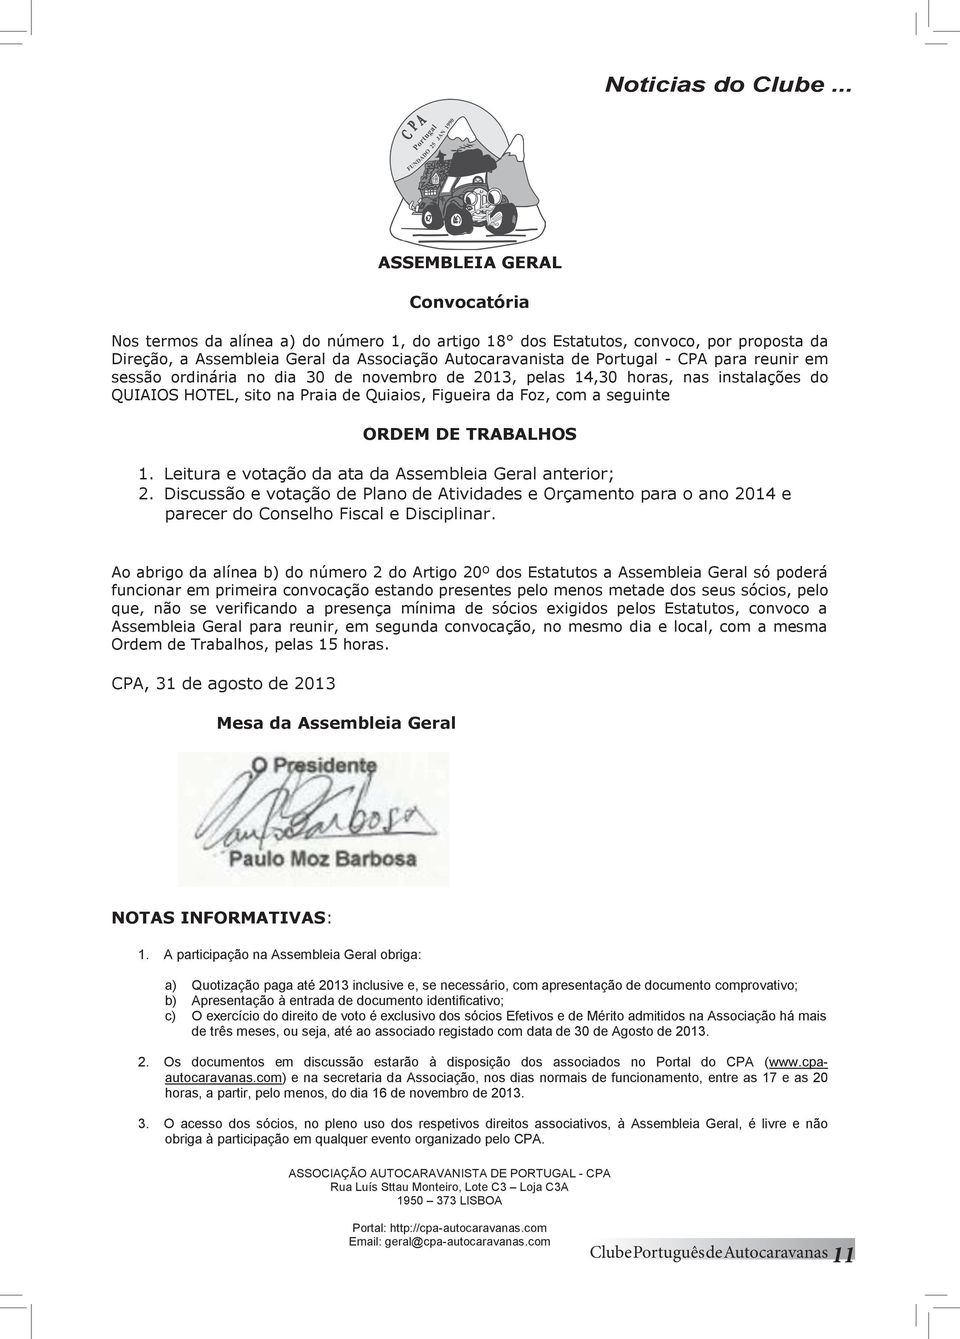 18 dos Estatutos, convoco, por proposta da Direção, a Assembleia Geral da Associação Autocaravanista de Portugal - CPA para reunir em Direção, a Assembleia Geral da Associação Autocaravanista de